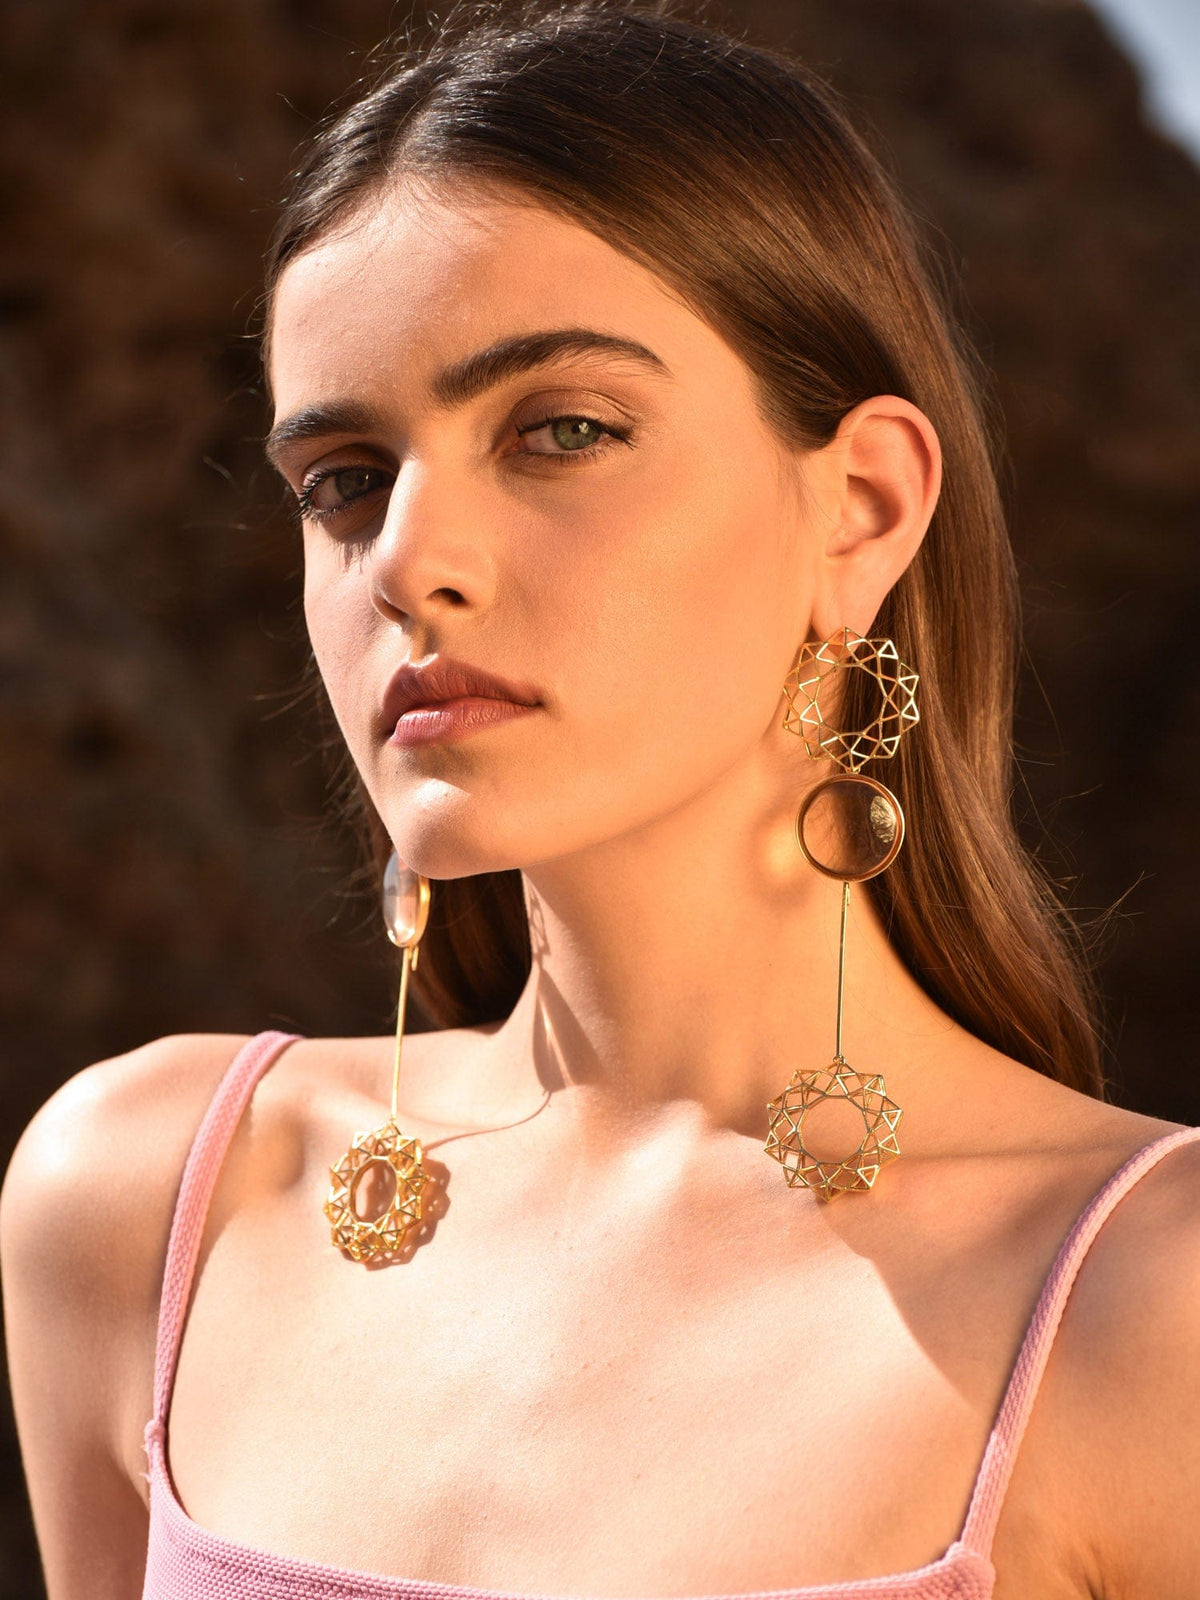 Adriana earrings (3 ways to wear)